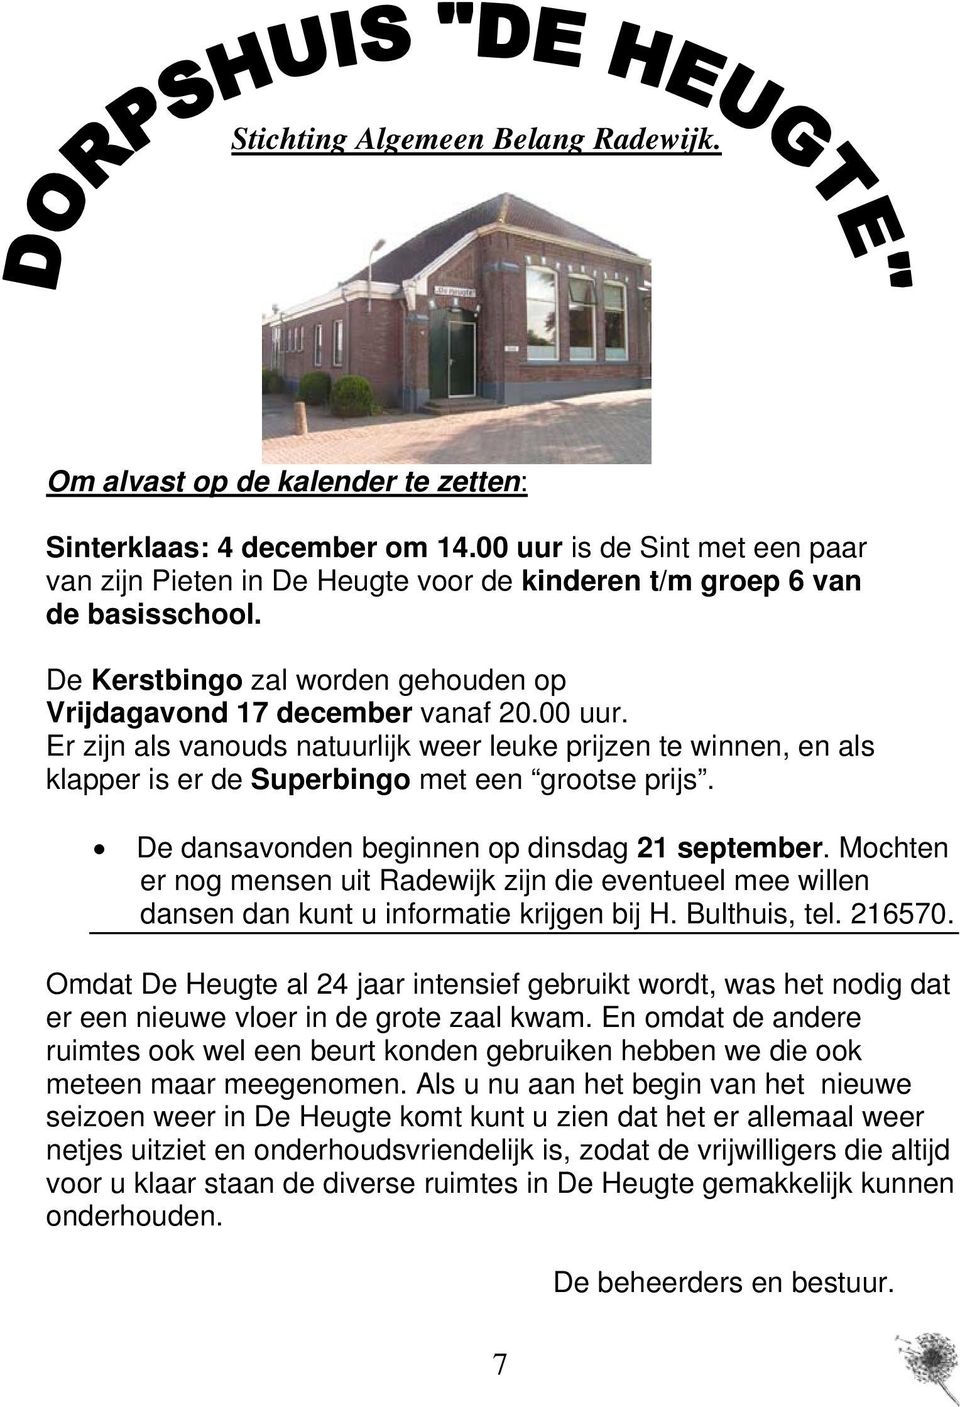 De dansavonden beginnen op dinsdag 21 september. Mochten er nog mensen uit Radewijk zijn die eventueel mee willen dansen dan kunt u informatie krijgen bij H. Bulthuis, tel. 216570.